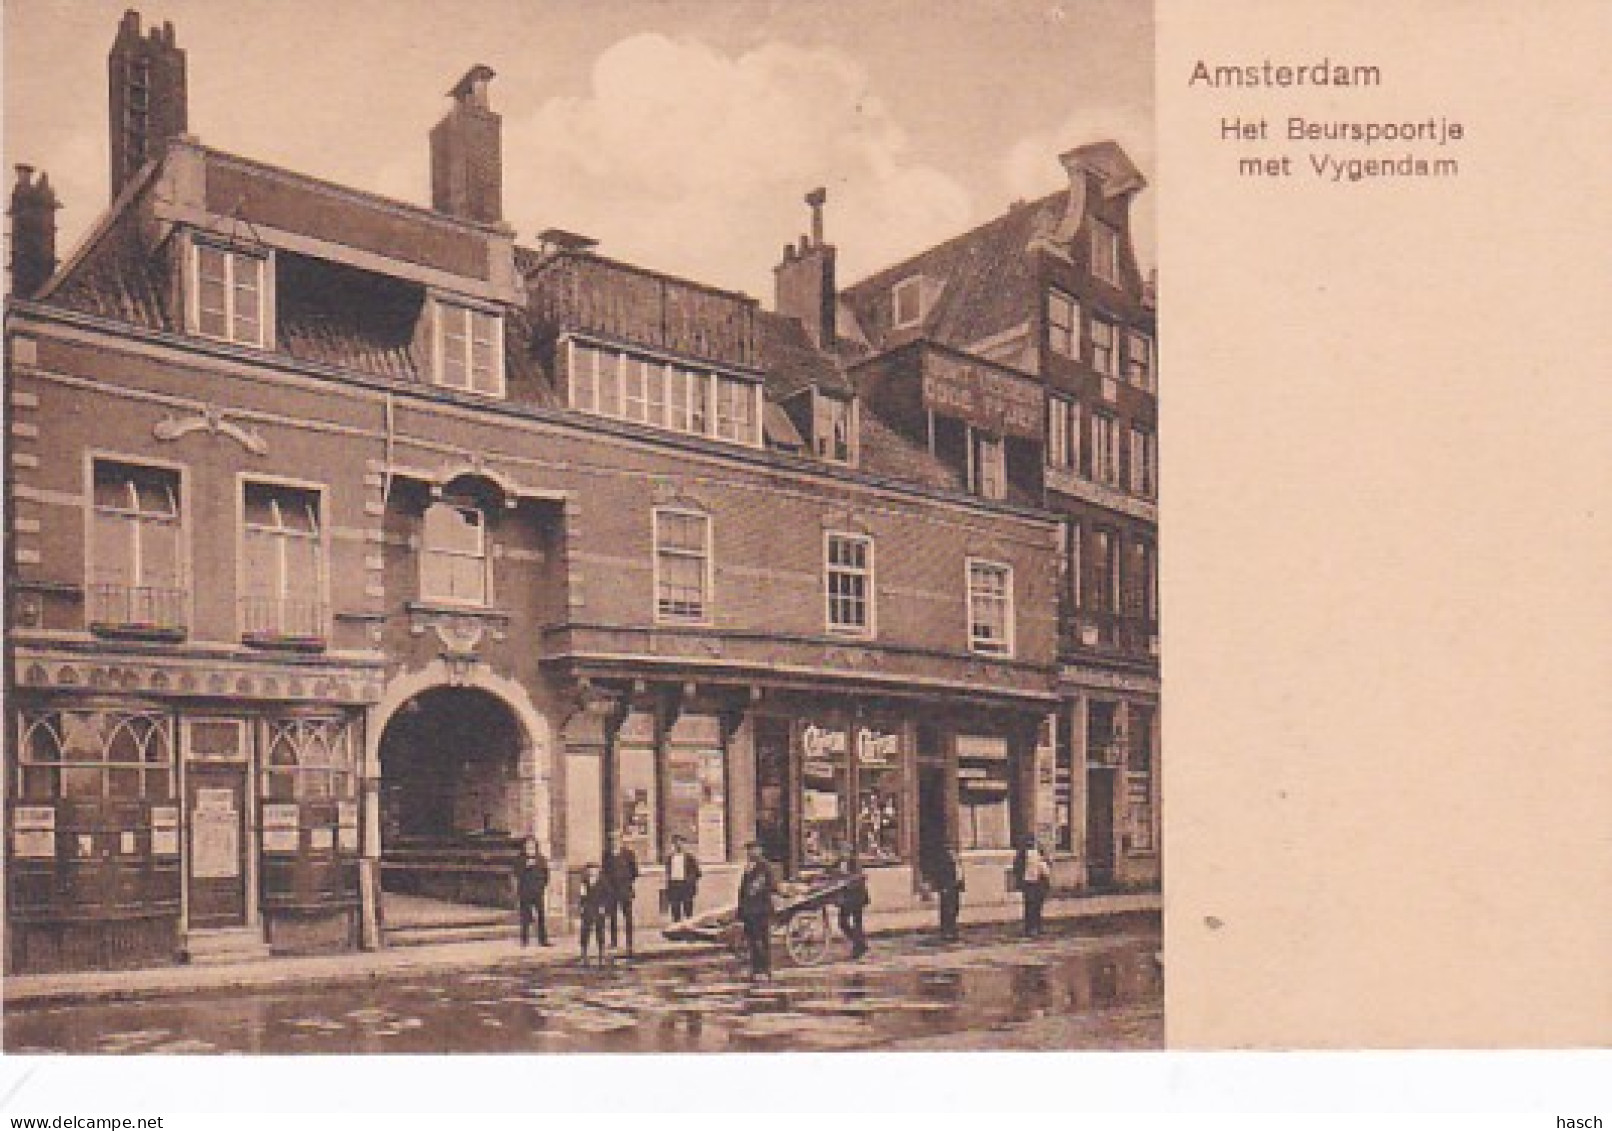 481981Amsterdam, Het Beurspoortje Met Vygendam. 1913. - Amsterdam